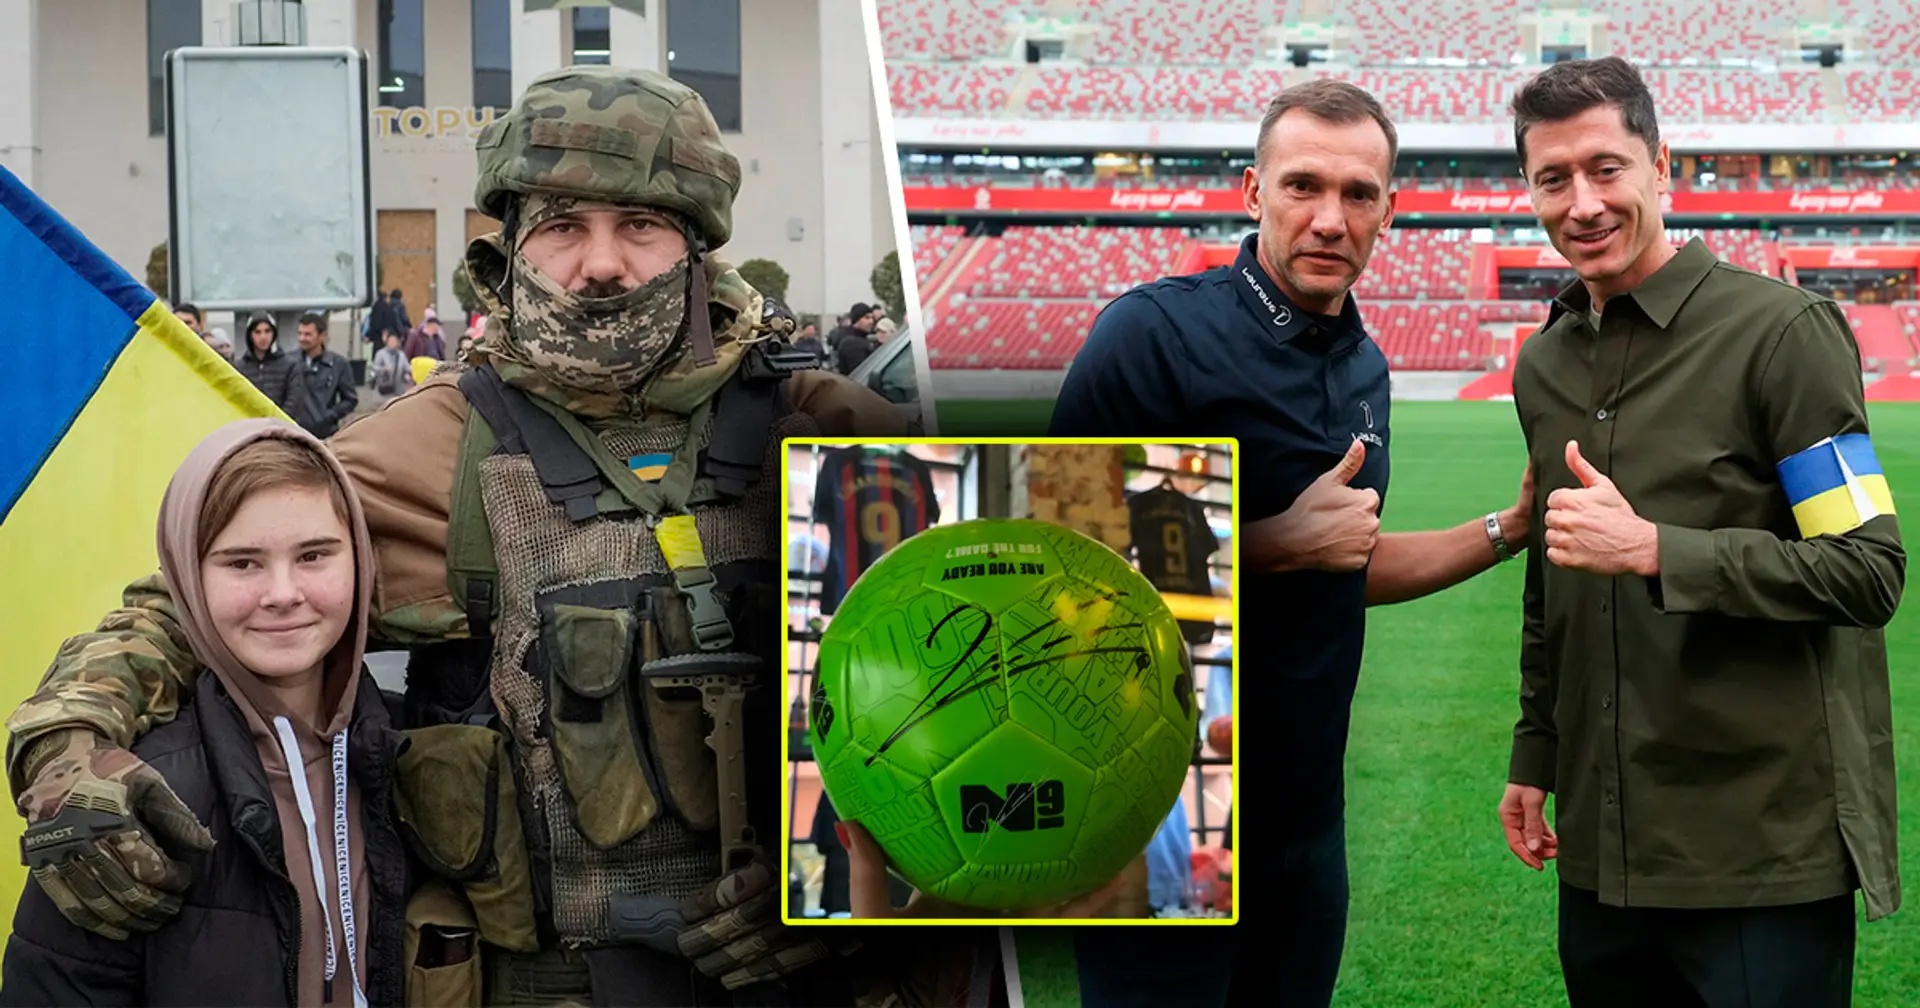 El balón firmado por Lewandowski y más: Tribuna.com lanza una campaña de recaudación de fondos que incluye una subasta con artículos valiosos de los mejores atletas para apoyar al ejército ucraniano